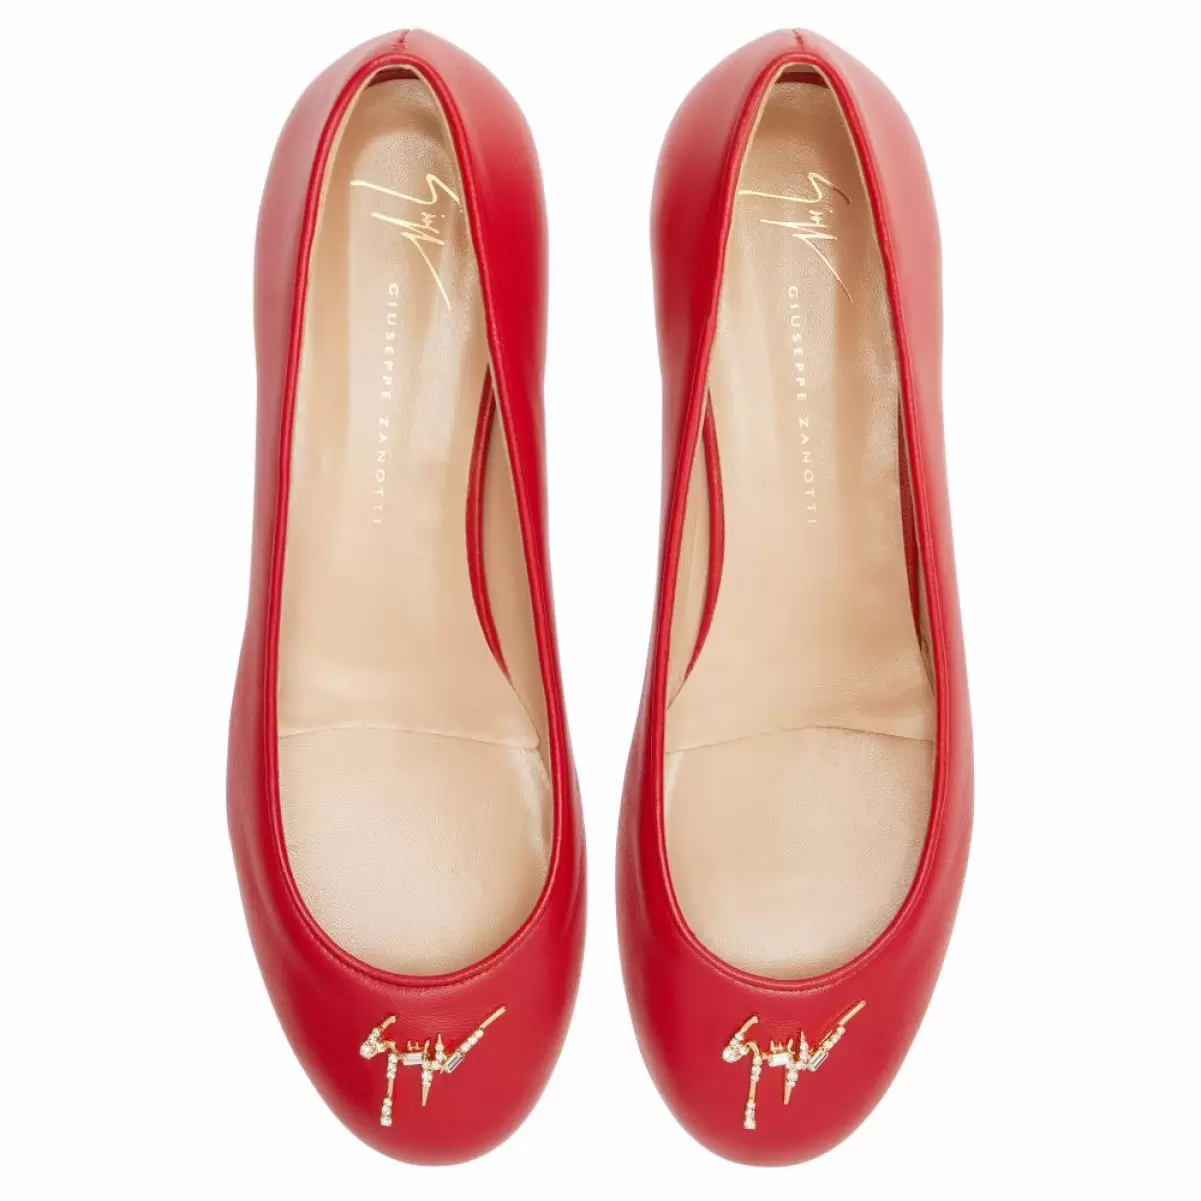 Riziana Mujer Zapatos Planos Giuseppe Zanotti Rojo - 4